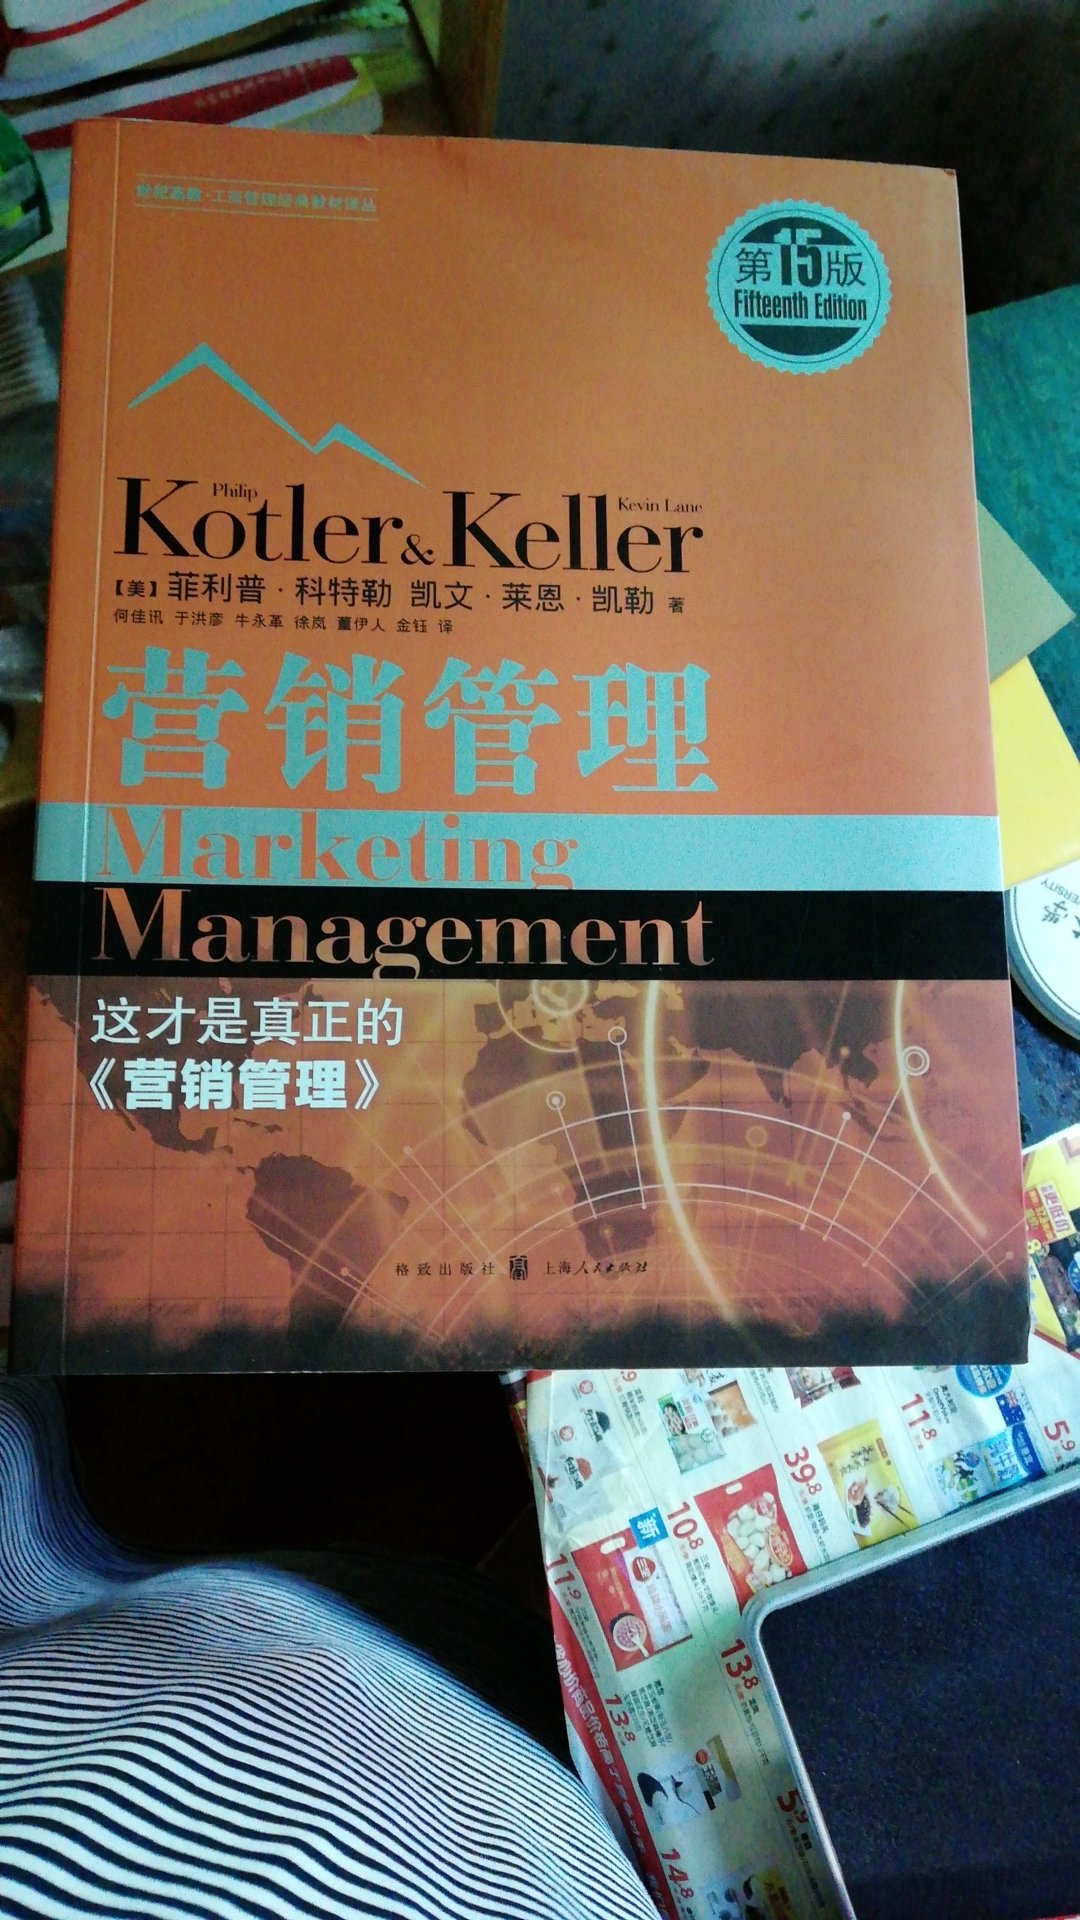 很厚的一本书，感觉像一本教材，买来慢慢啃，好好学习一下营销管理知识。